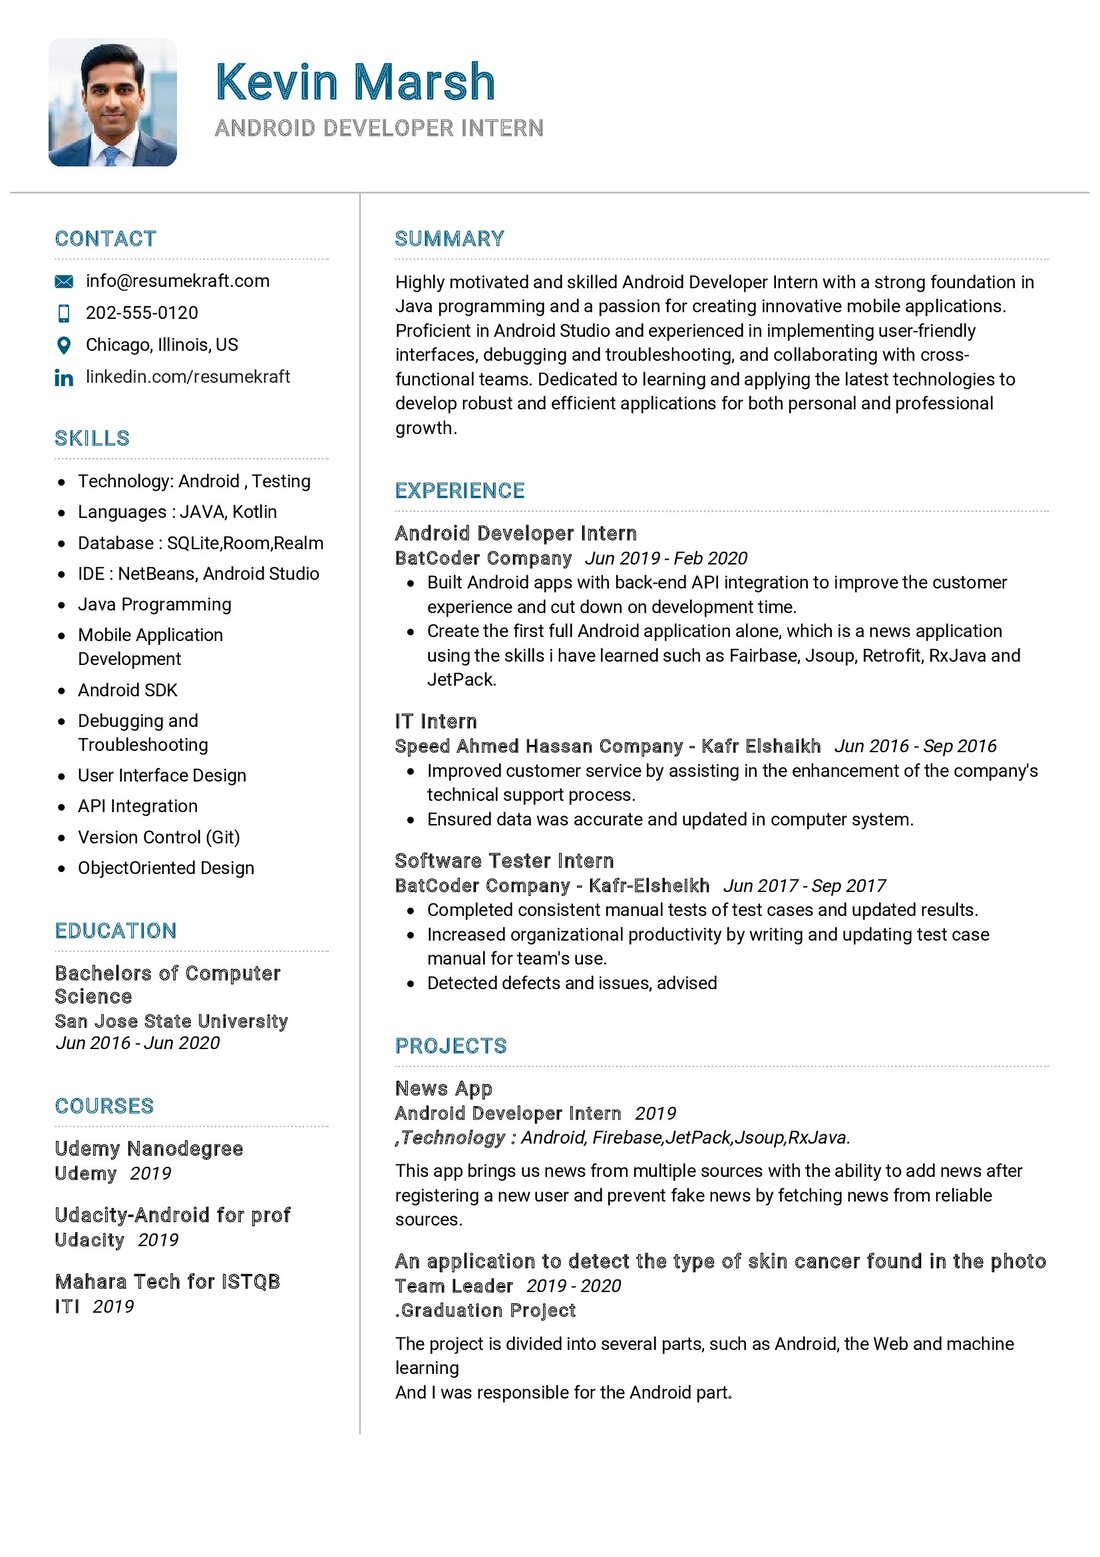 Android Developer Intern CV Example in 2024 - ResumeKraft